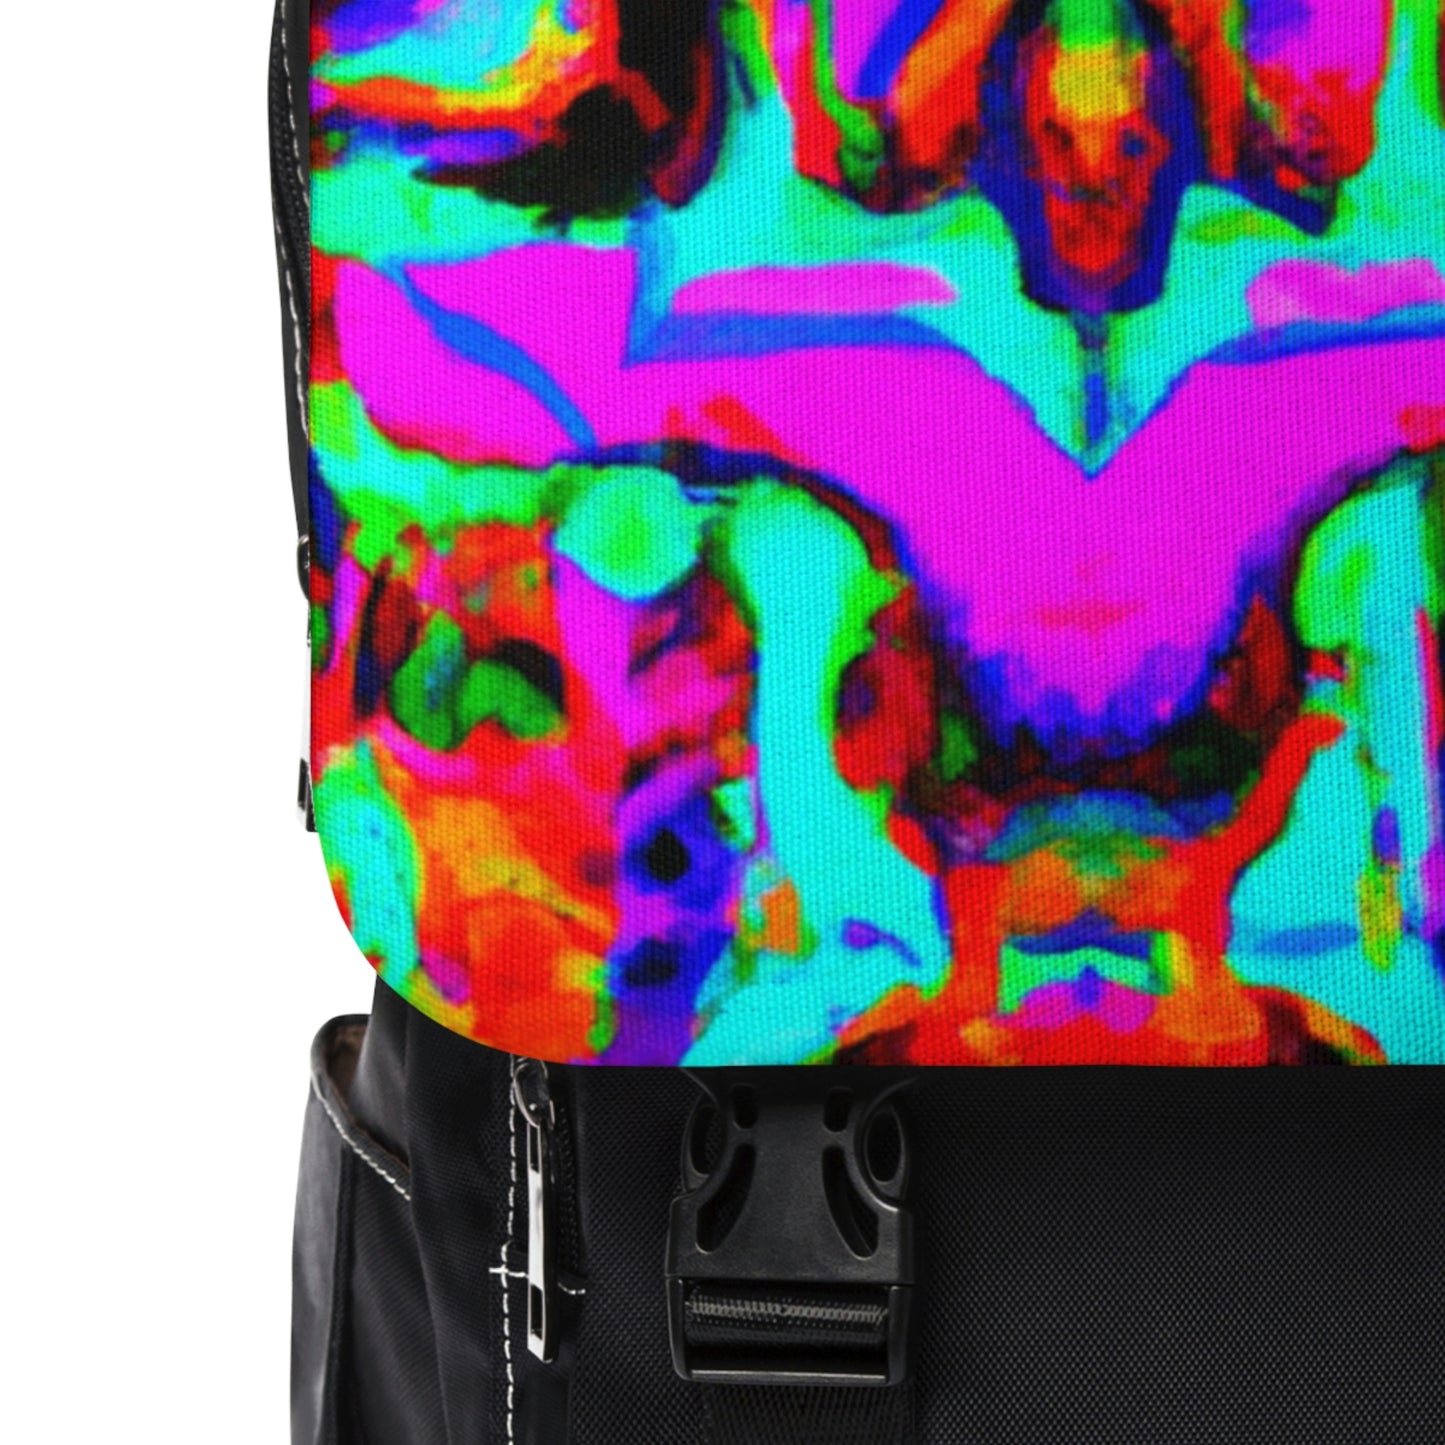 Lafayette - Psychedelic Shoulder Travel Backpack Bag